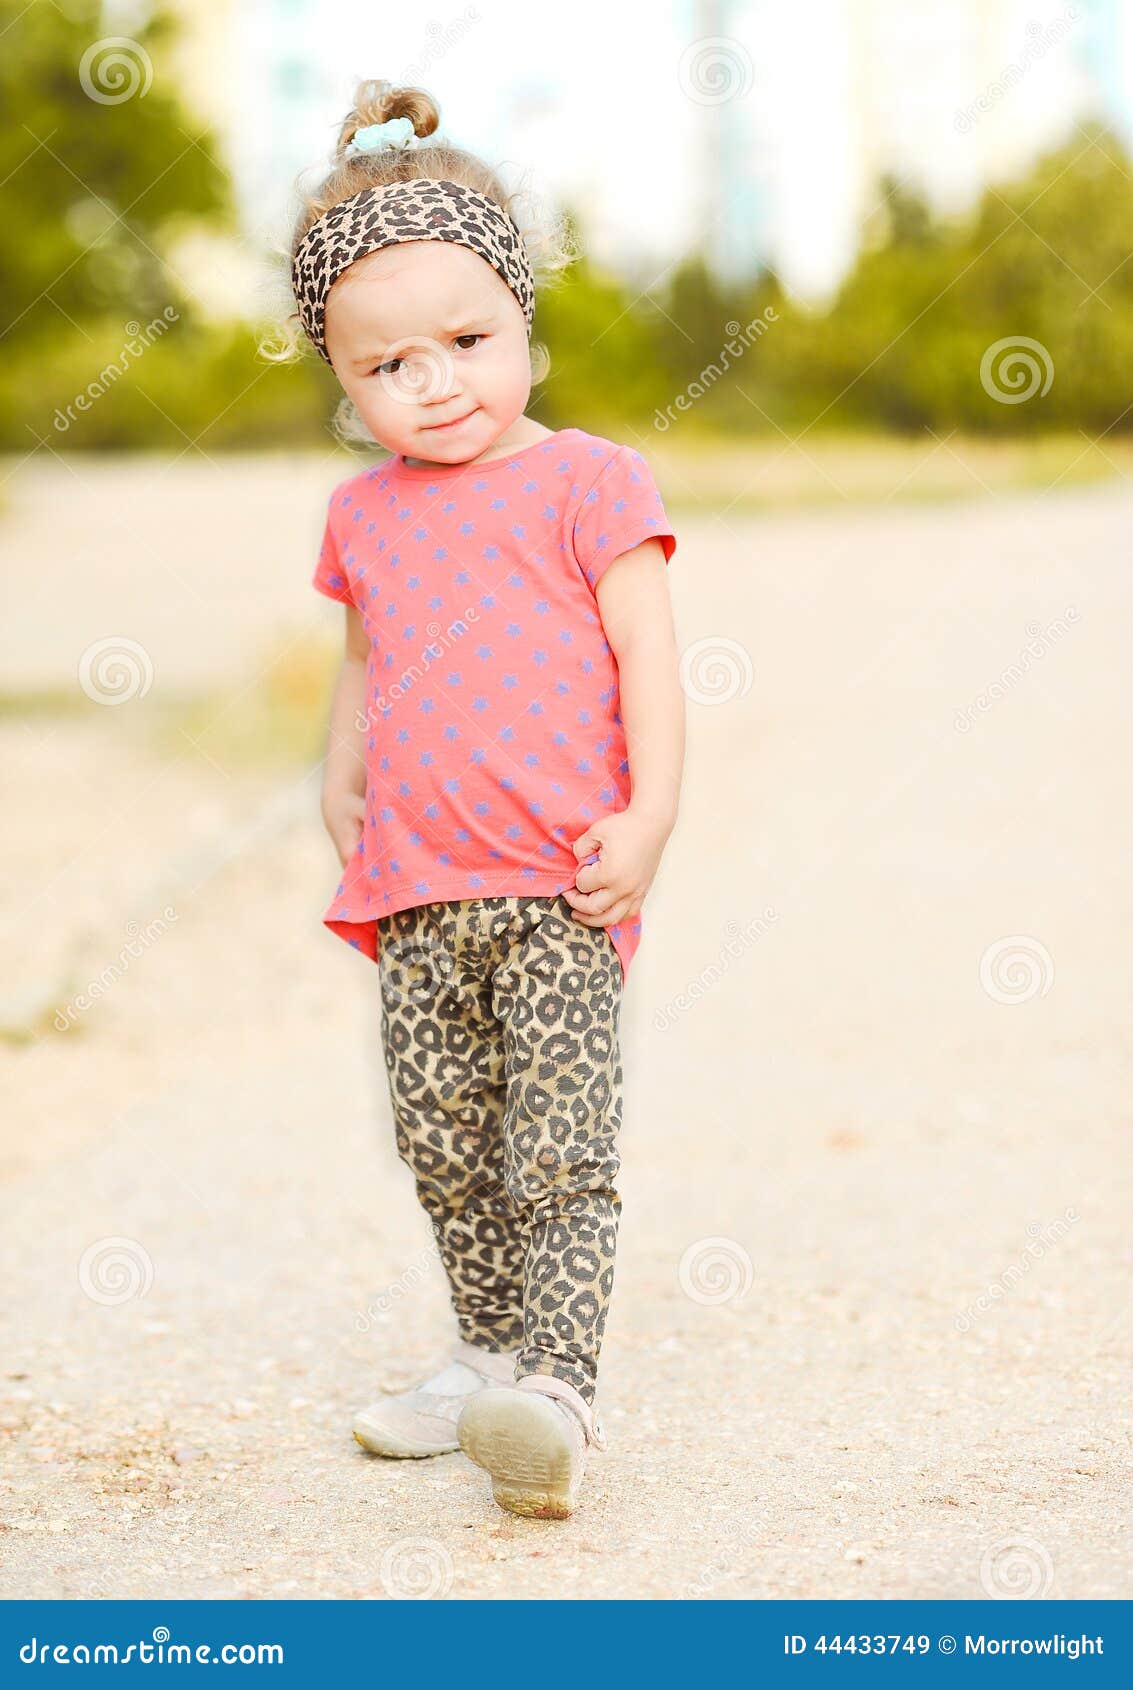 Stylish Baby Girl Walking Outdoors Stock Image - Image of beauty ...